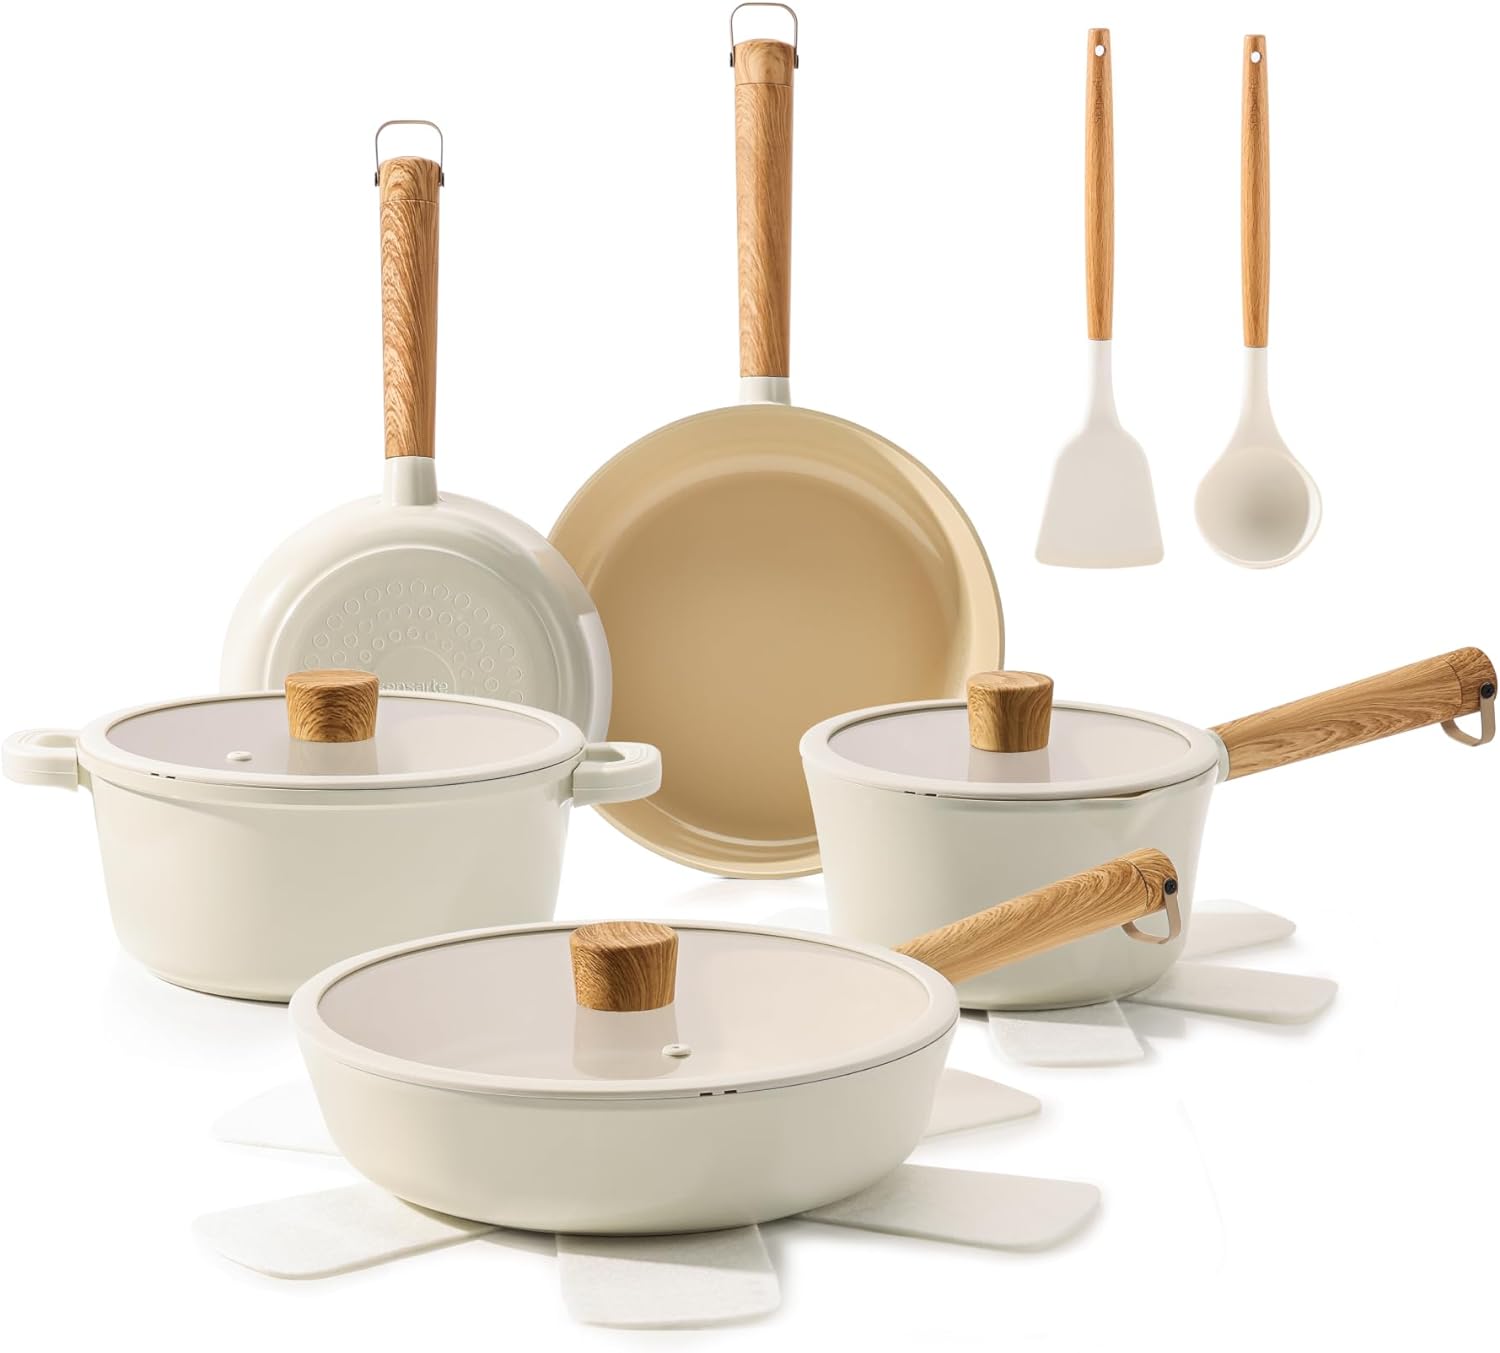 Save Big on the SENSARTE Ceramic Nonstick Pots and Pans Set - Limited-Time Offer!